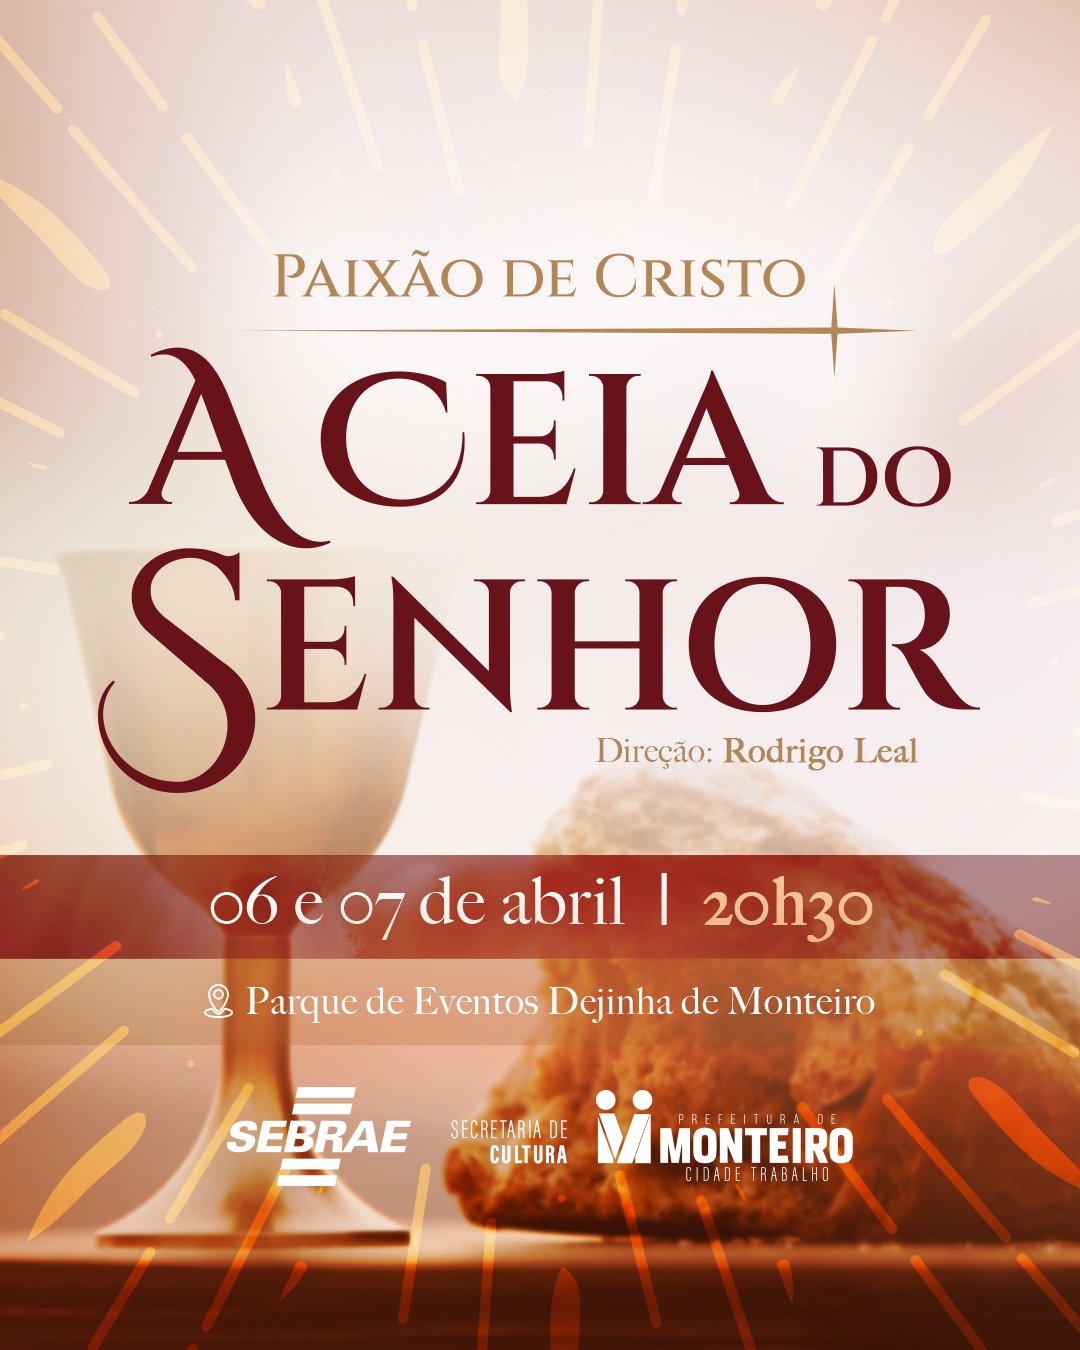 paixao-de-cristo MONTEIRO: Artistas e artesãos iniciam construção dos cenários da “Paixão de Cristo: A Ceia do Senhor”